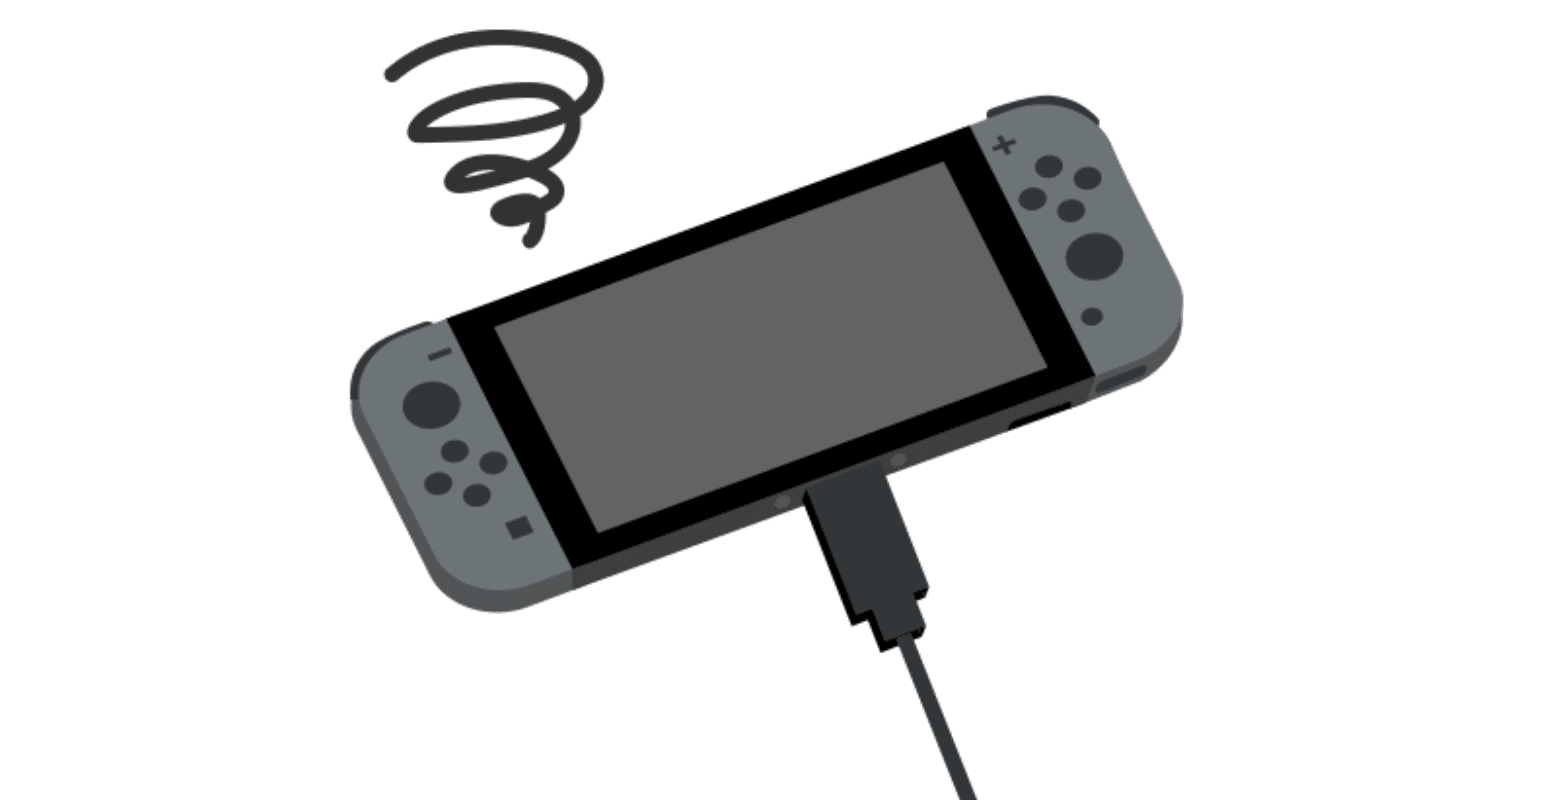 Nintendo Switch: preço alto, mas magia de sobra